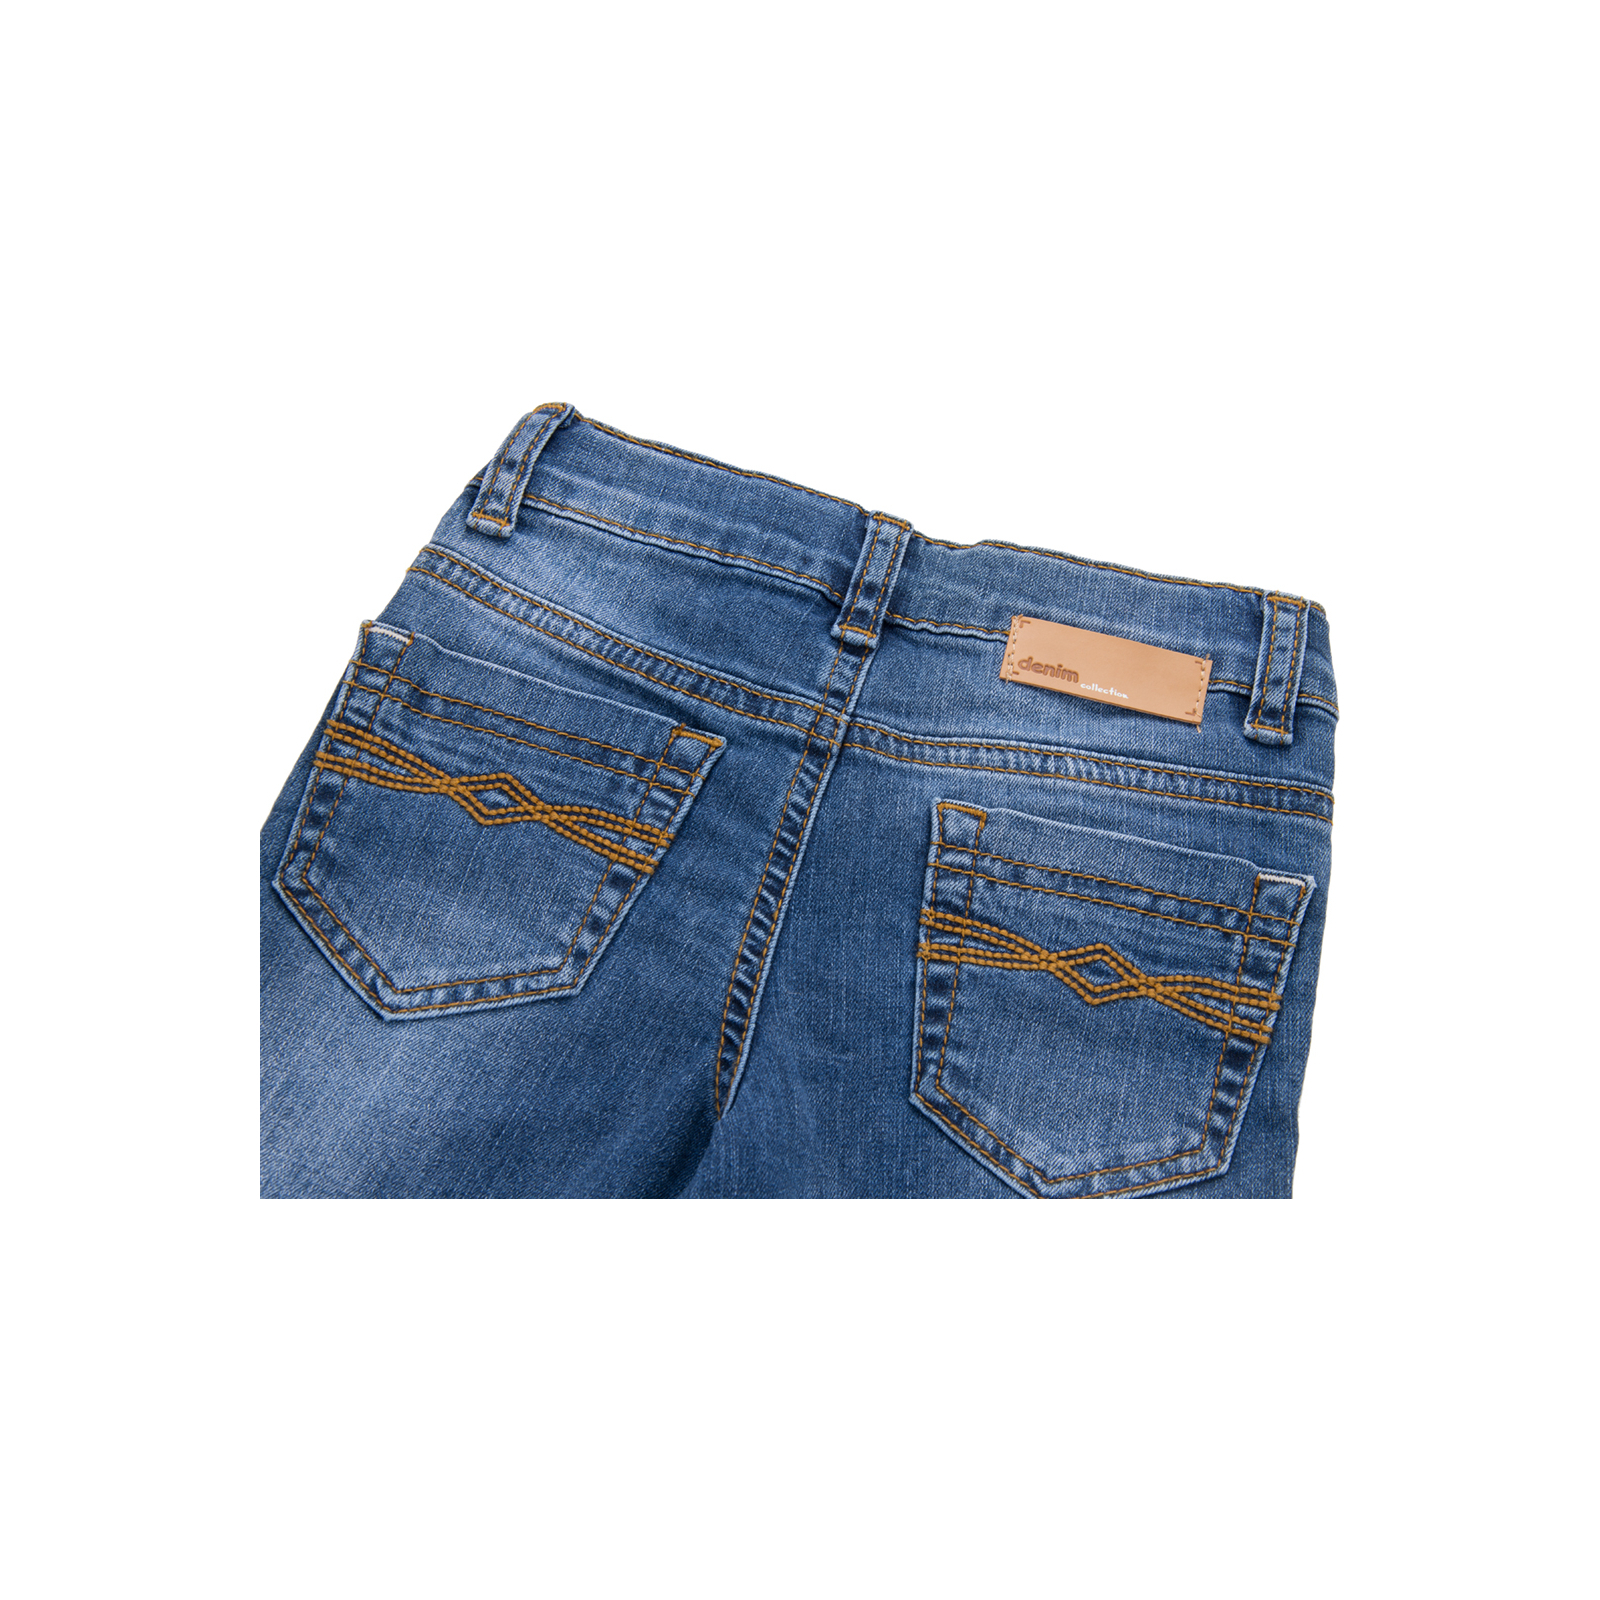 Джинсы Breeze синие (15YECPAN371-74B-jeans) изображение 4